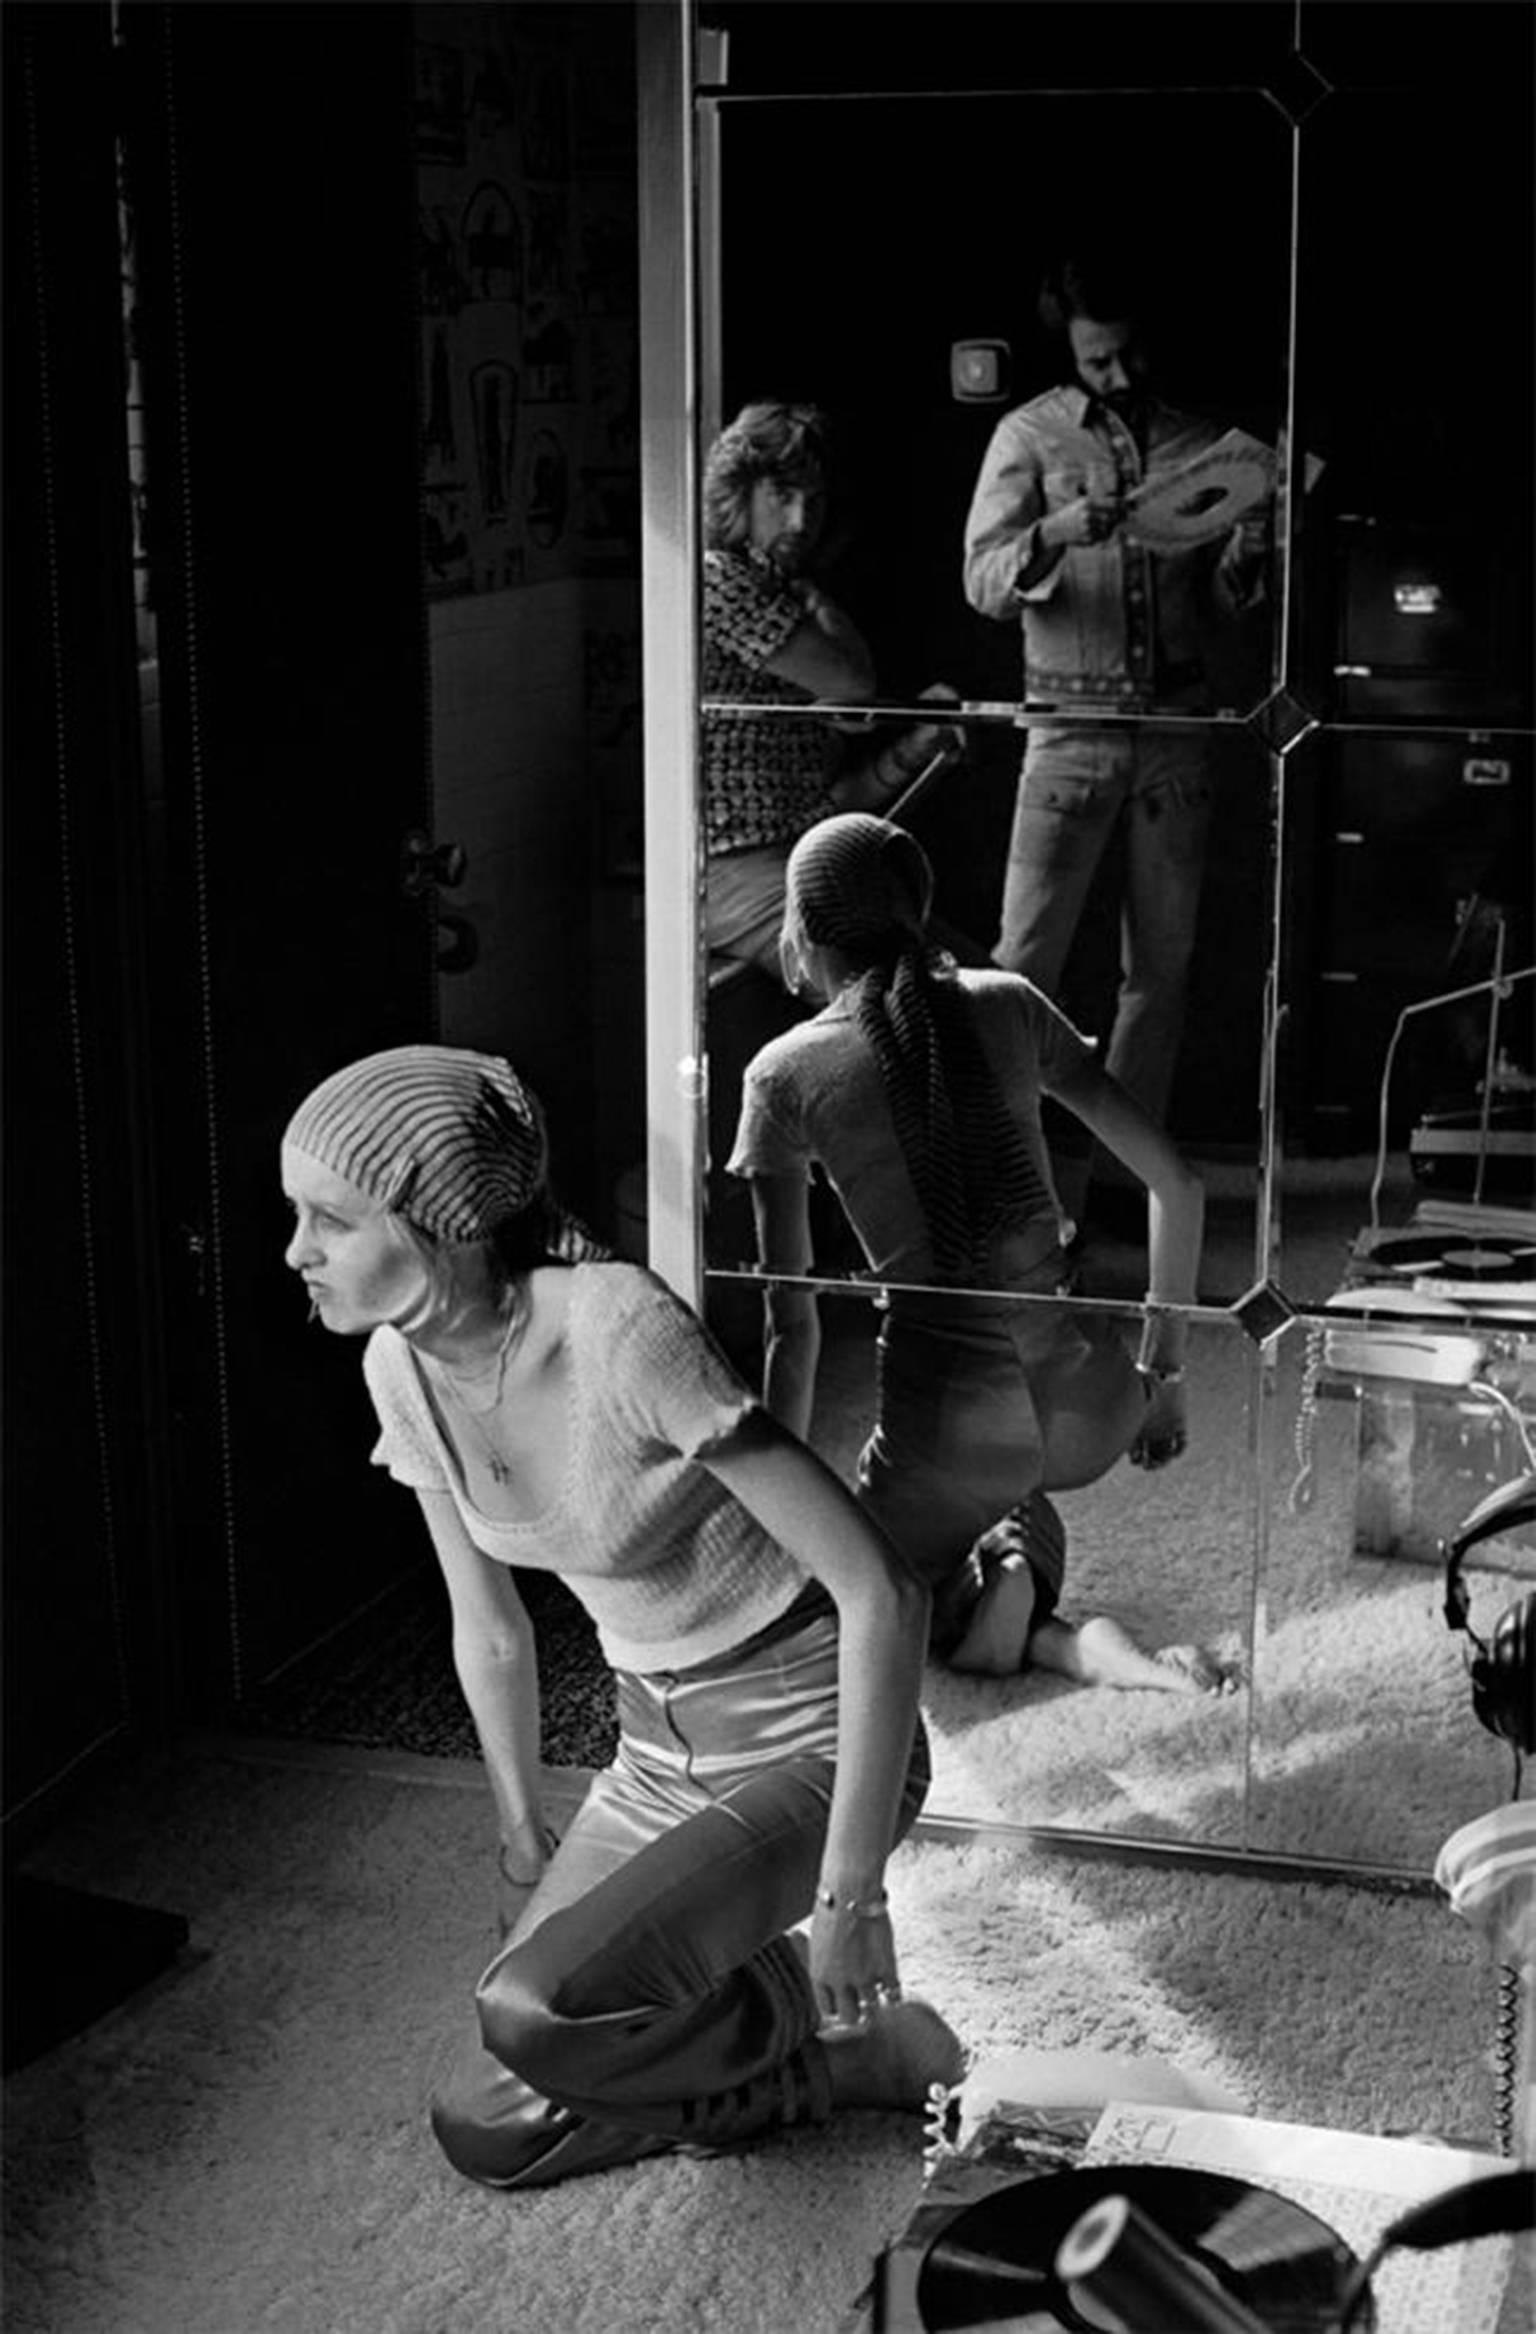 Graham Nash Black and White Photograph - Twiggy, Justin de Villeneuve, and Larry Kurzon, NYC 1969